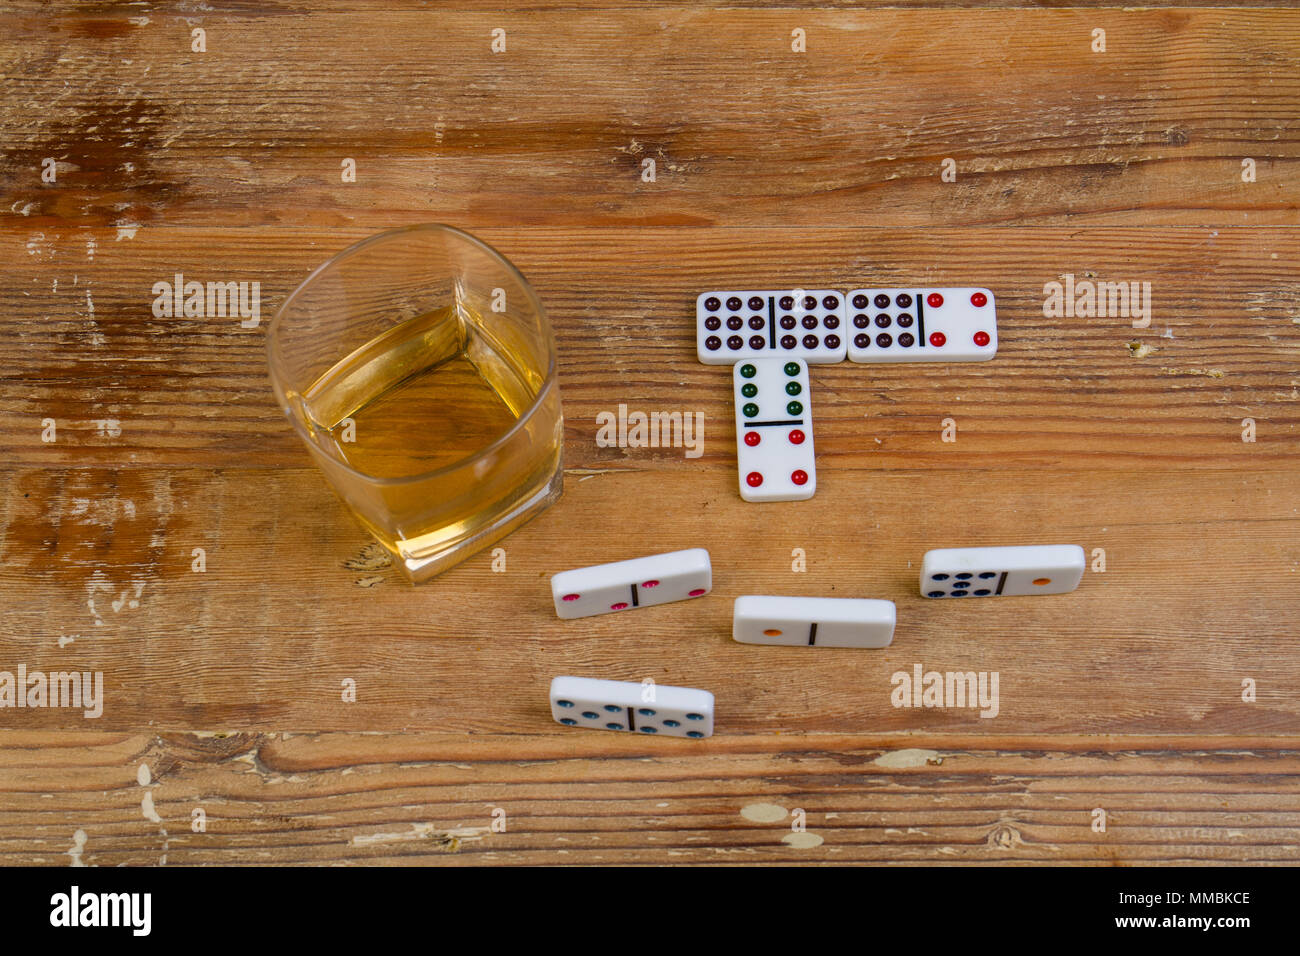 Glas Whisky und ein Spiel der Domino auf einem hölzernen Oberfläche Bild mit Kopie Raum im Querformat. Stockfoto